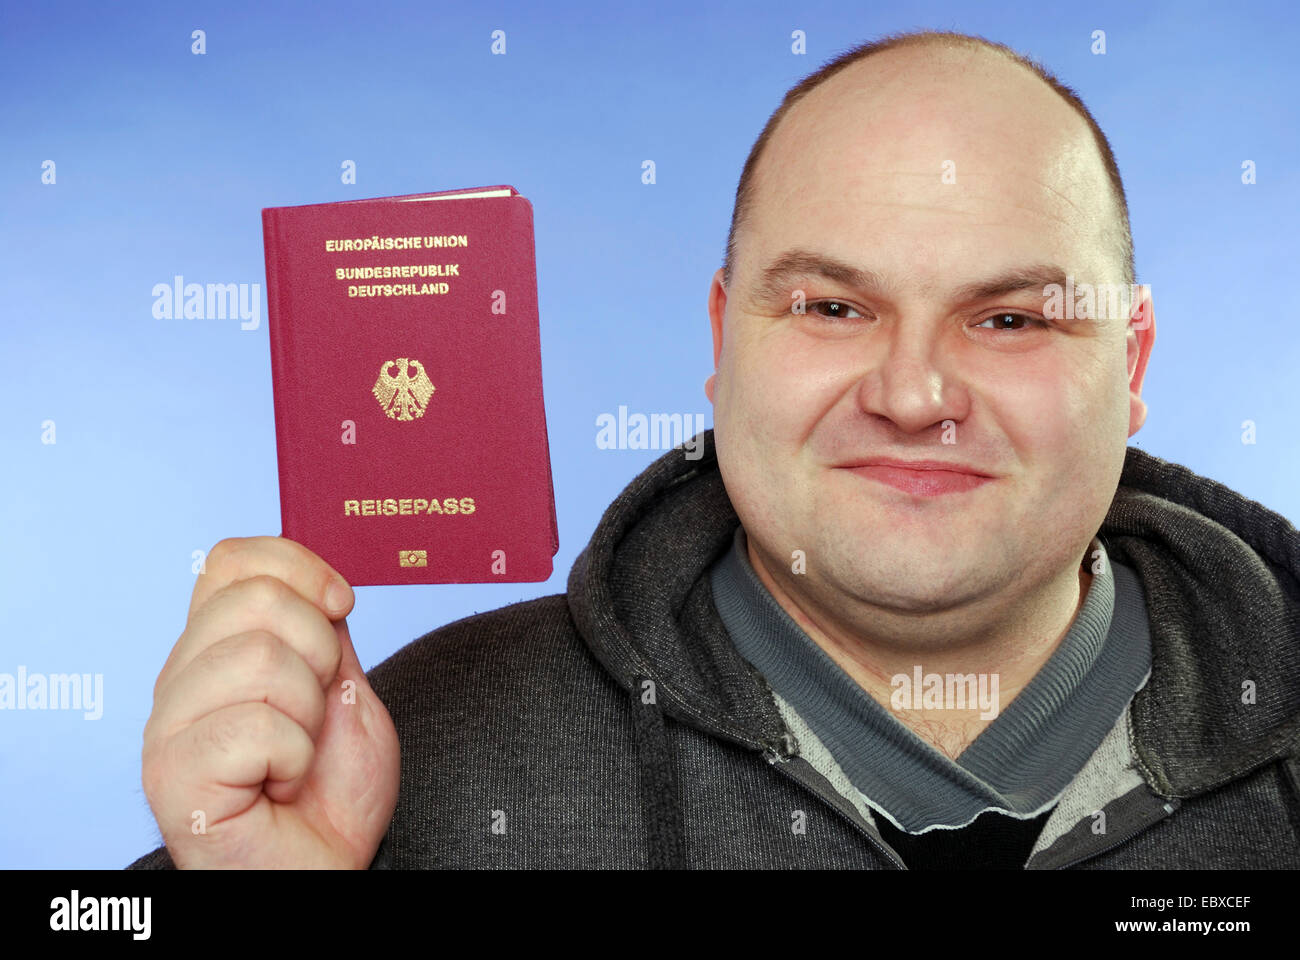 Homme tenant son passeport Banque D'Images